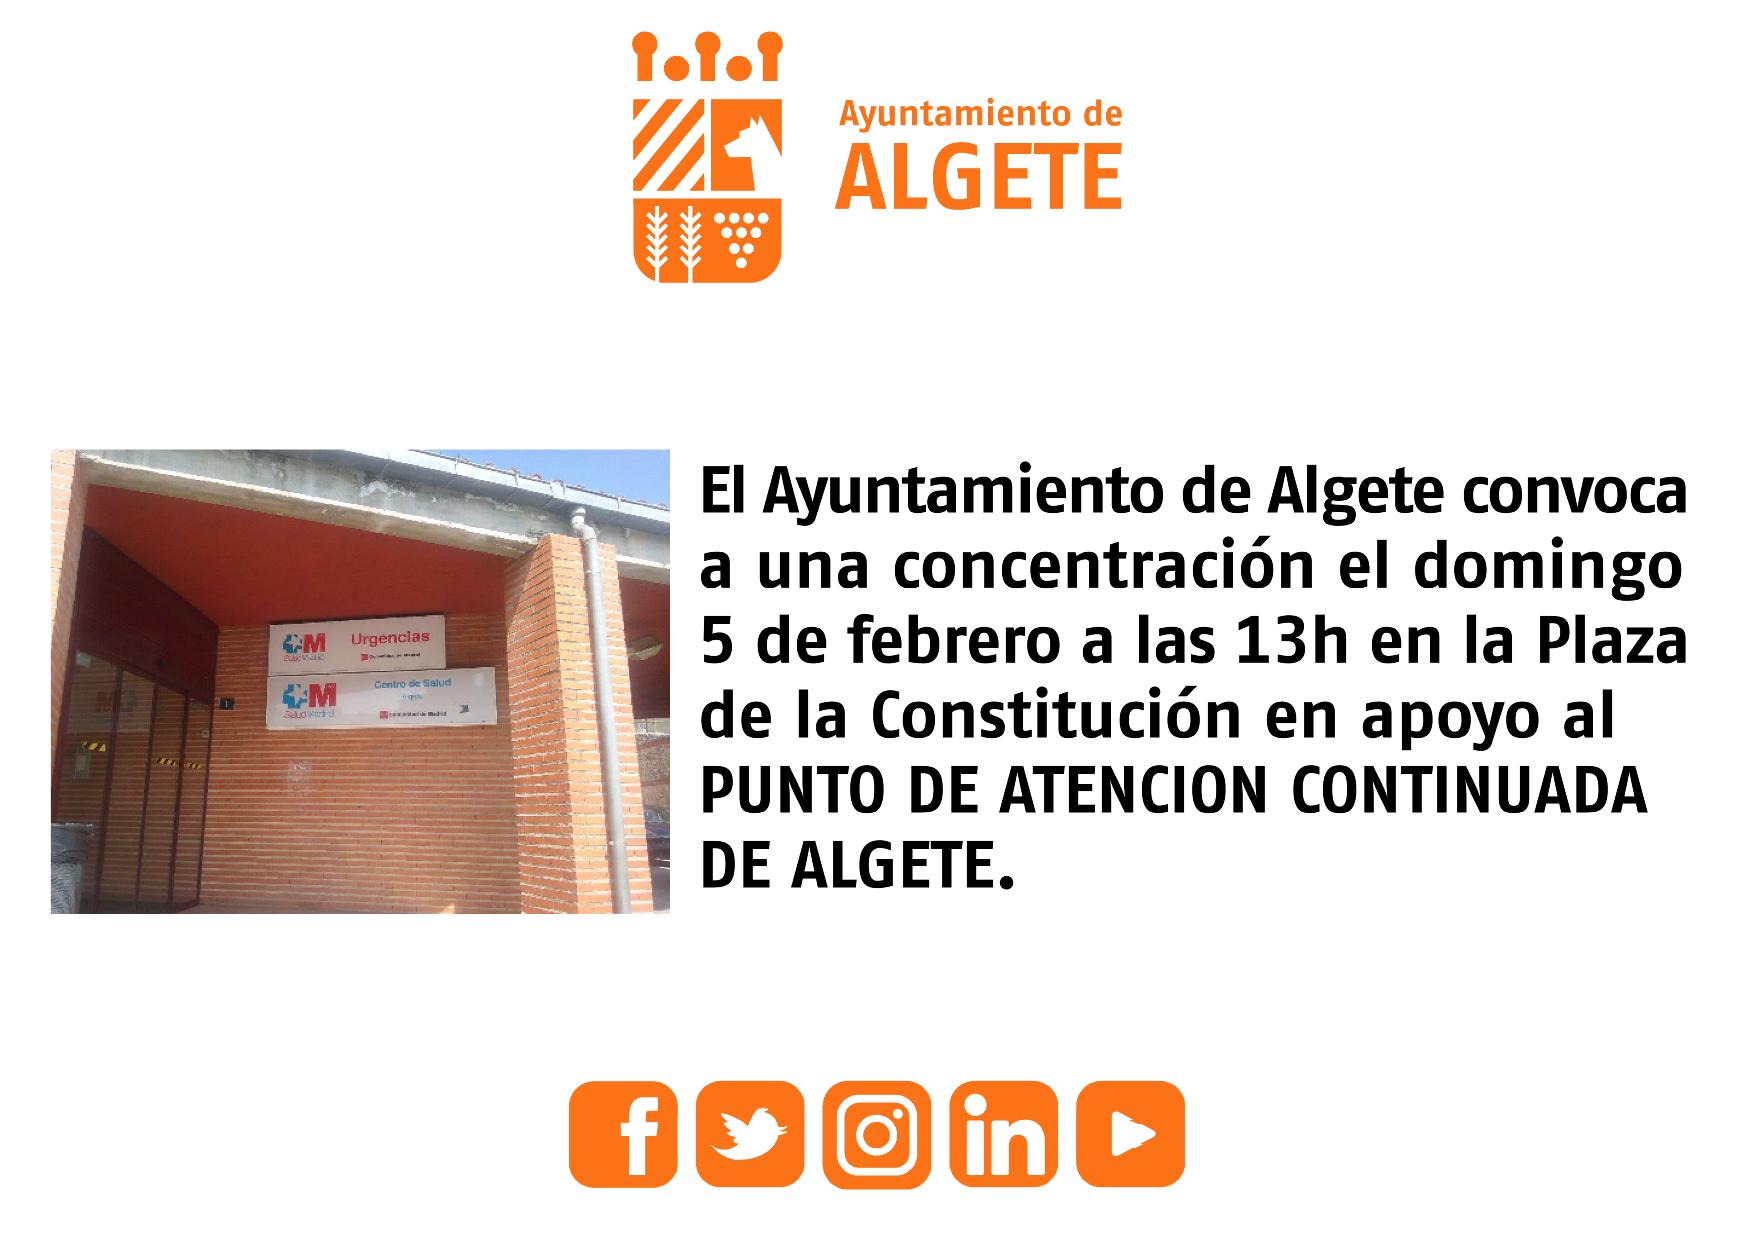 Foto cedida por Ayuntamiento de Algete